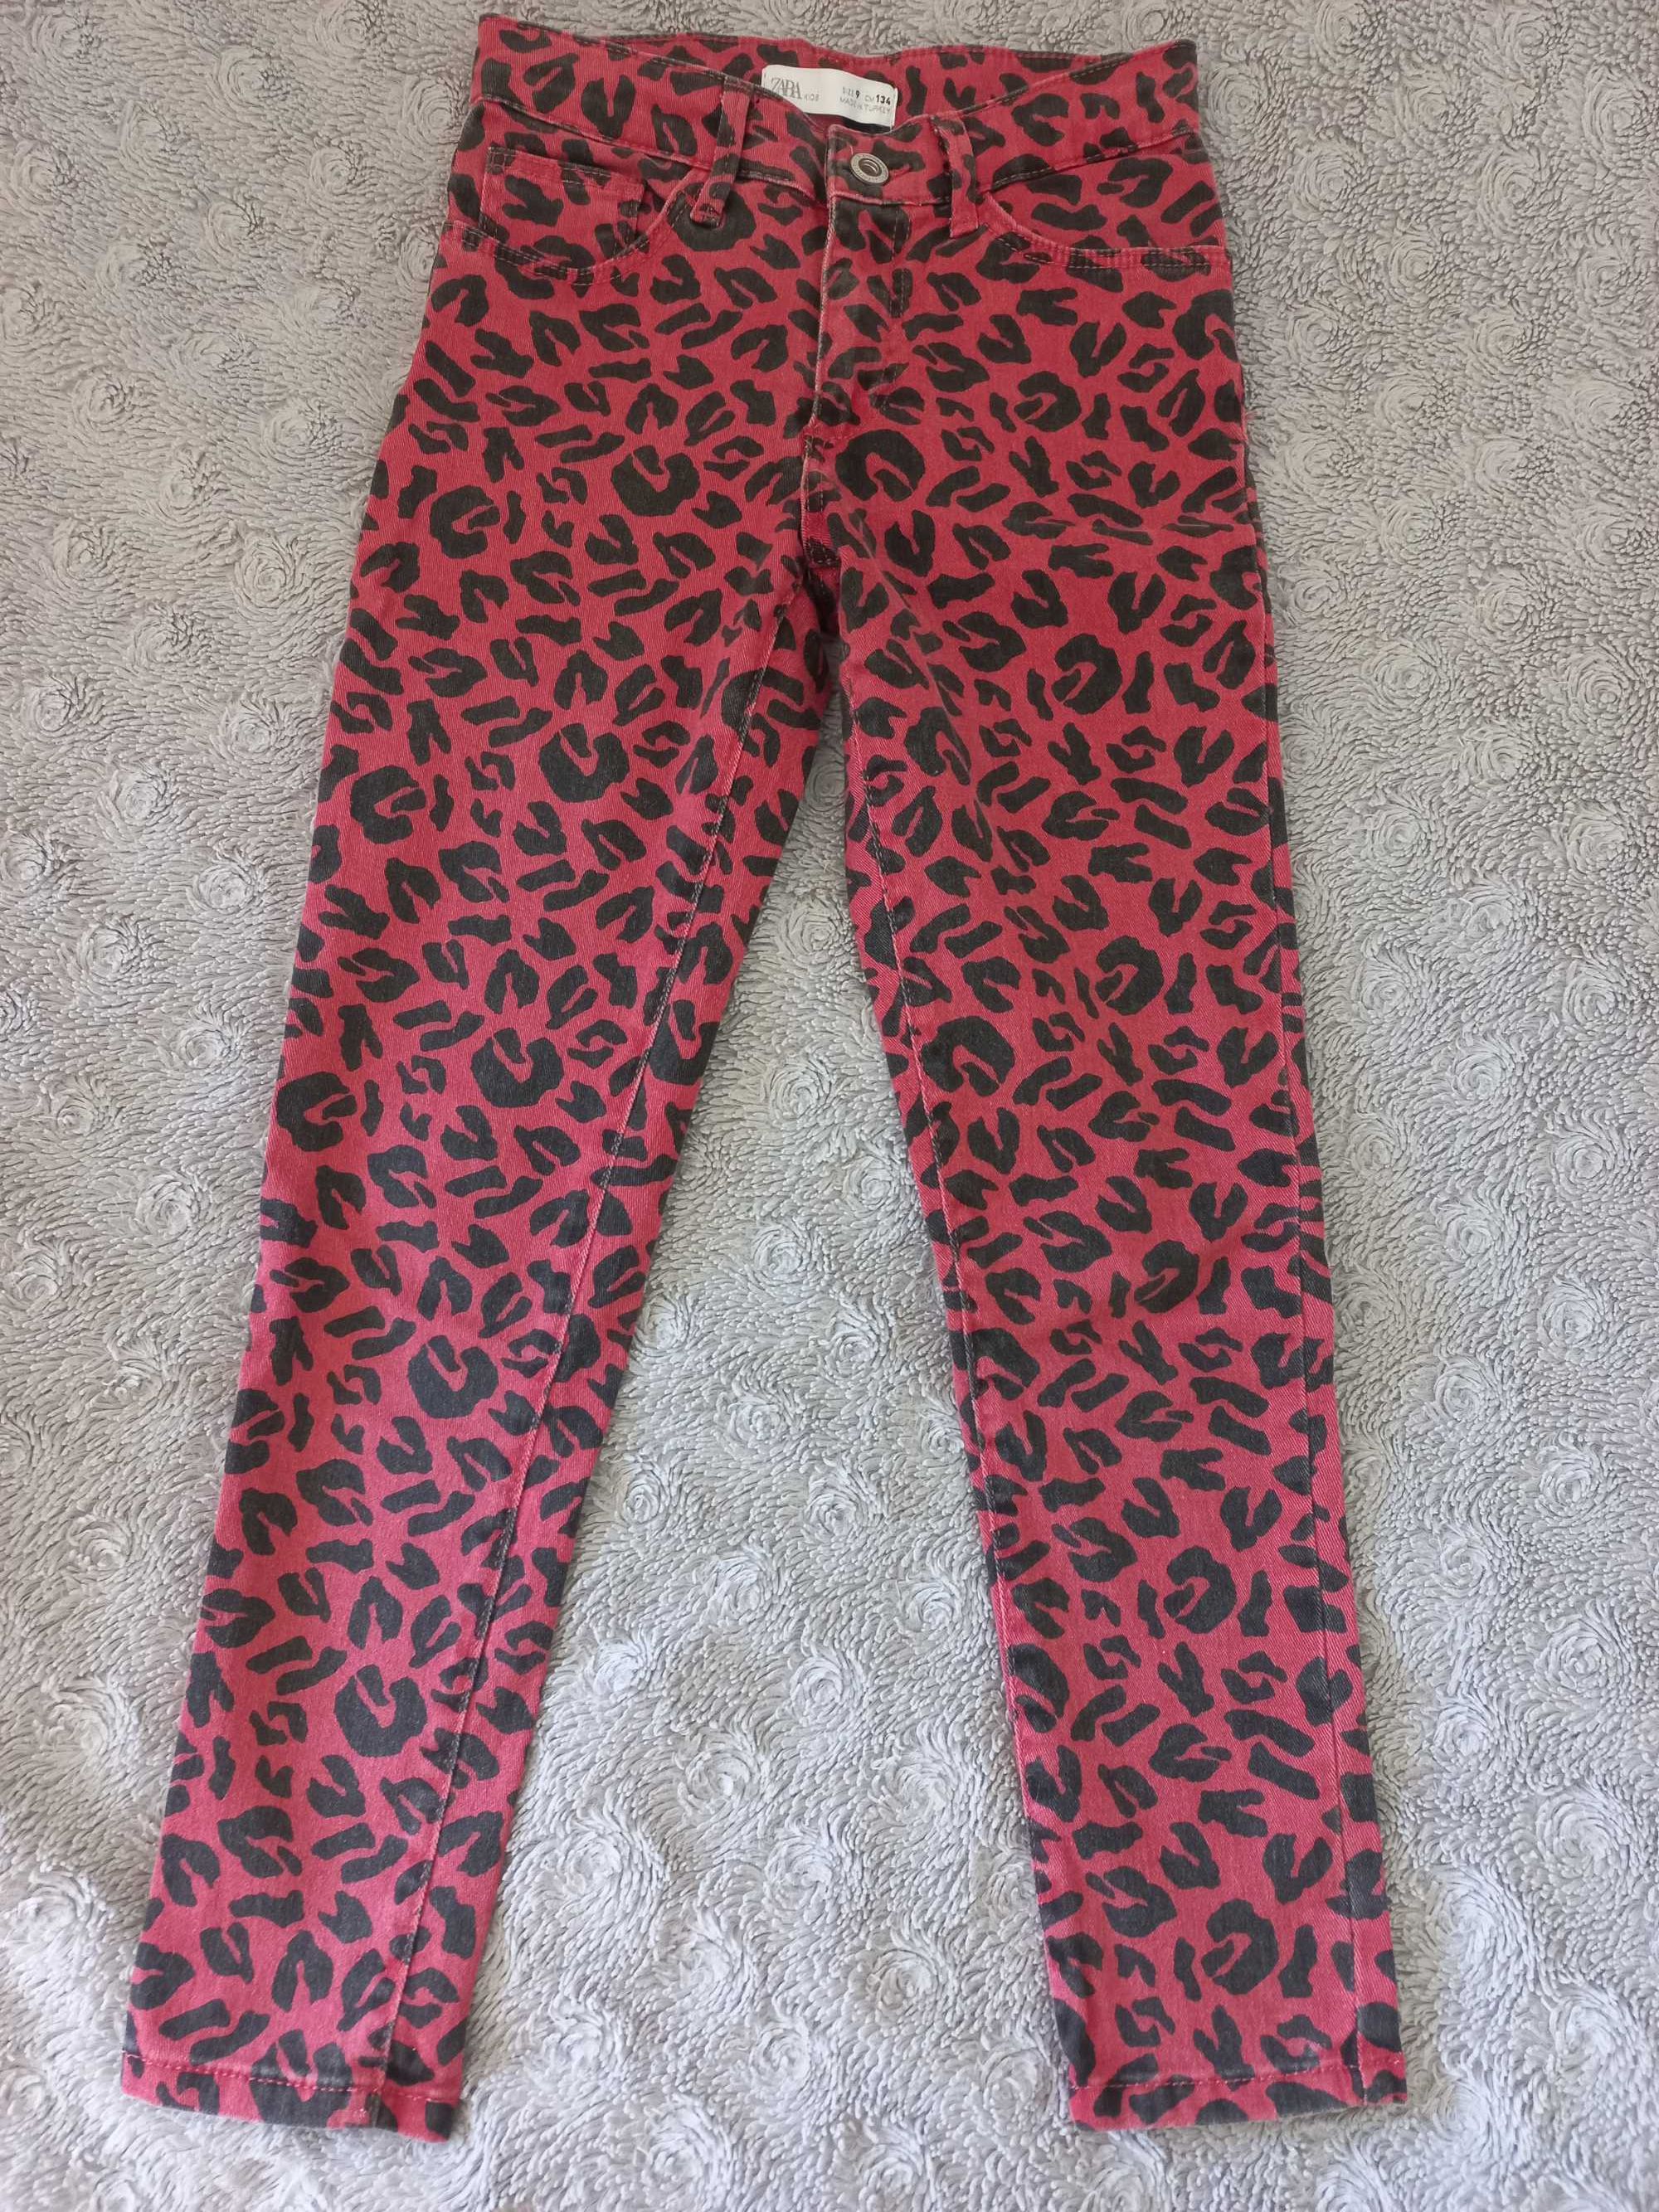 Spodnie Zara czerwone w czarne cętki Rozm. 134 jak nowe